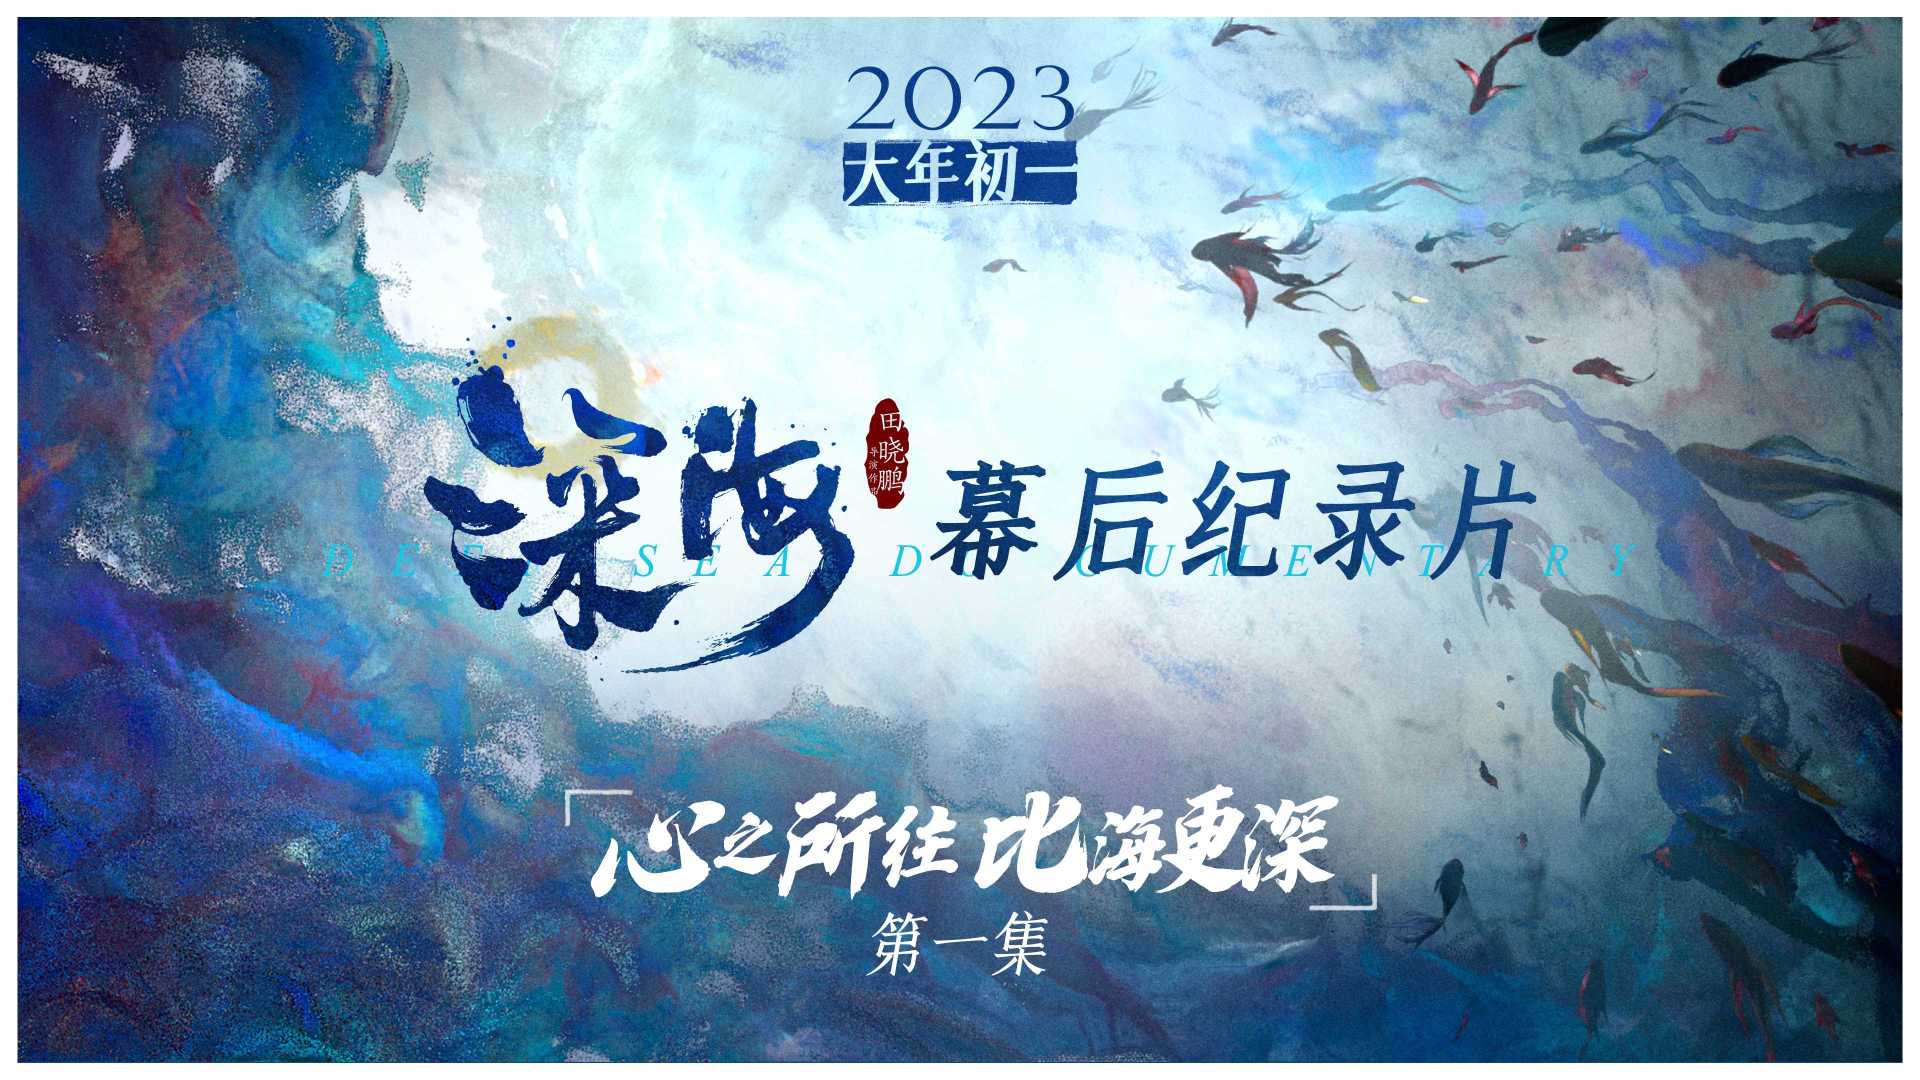 春节视效巨制《深海》首曝幕后纪录片！想让世界看到中国动画